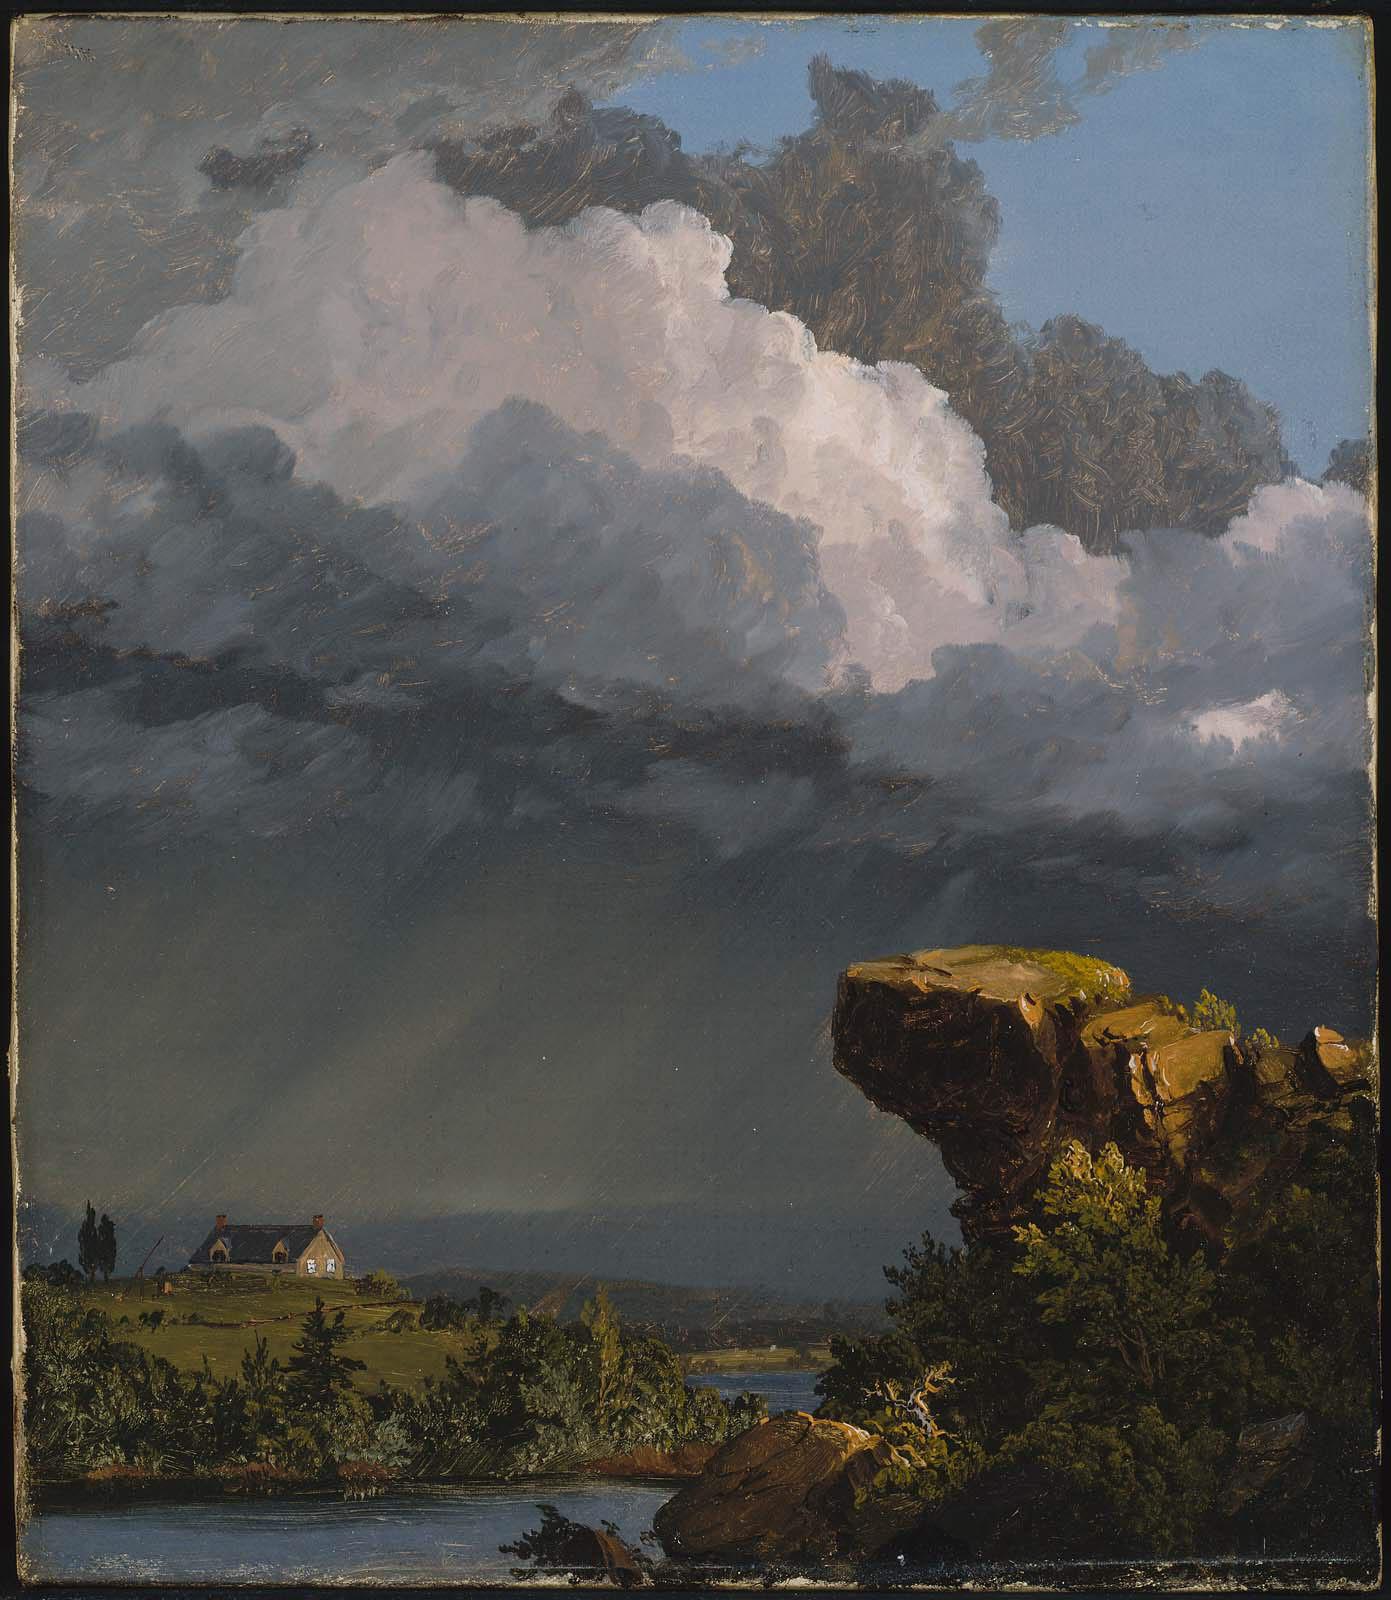 Geçmekte Olan Fırtına by Frederic Edwin Church - 1849 - 35,88 x 30,48 cm 